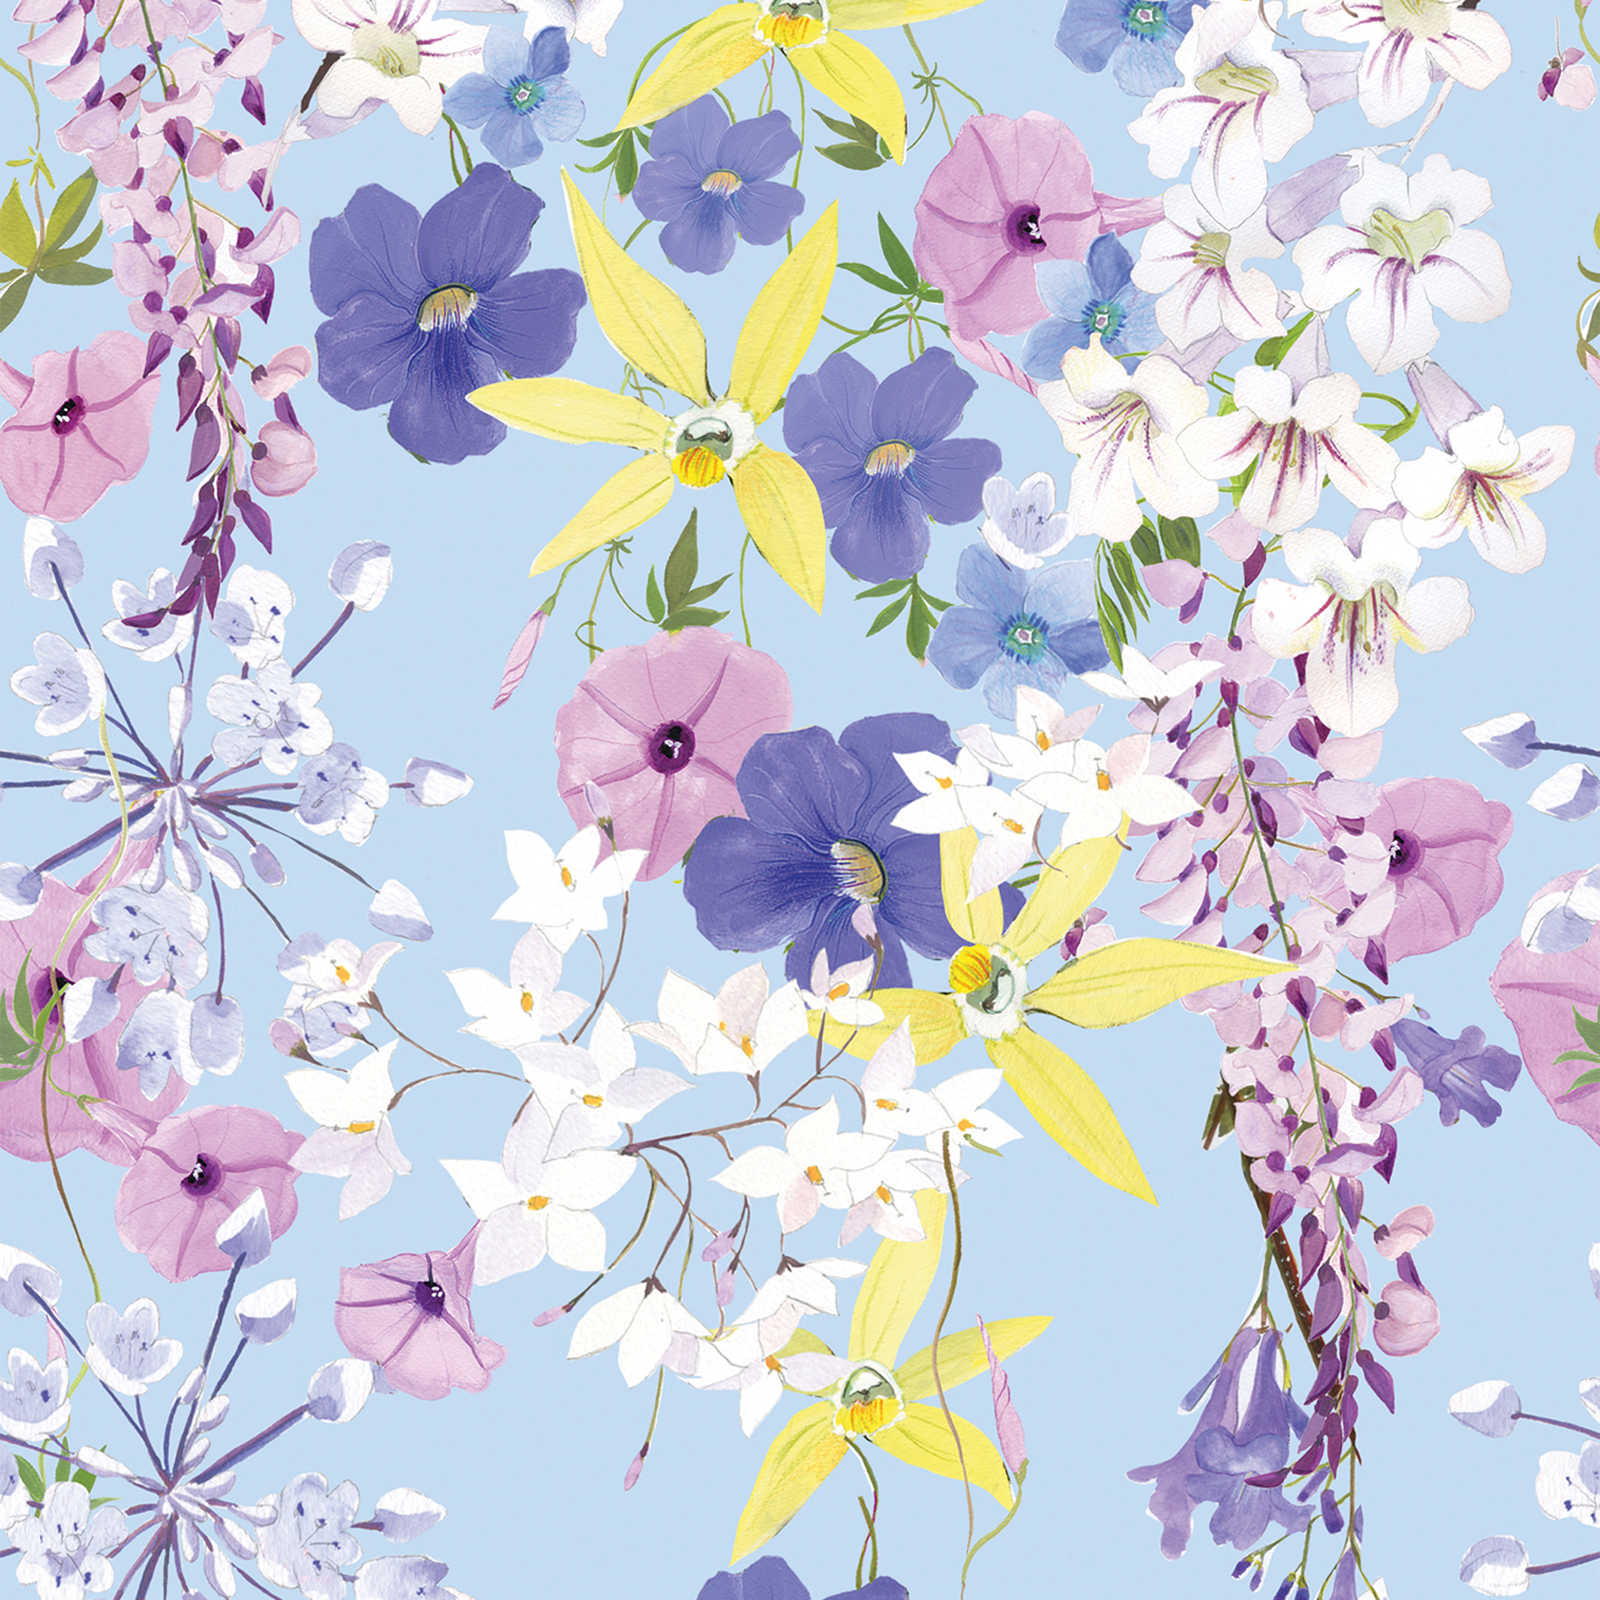 Papier peint à motifs floraux dans des tons froids - multicolore, lilas, jaune
